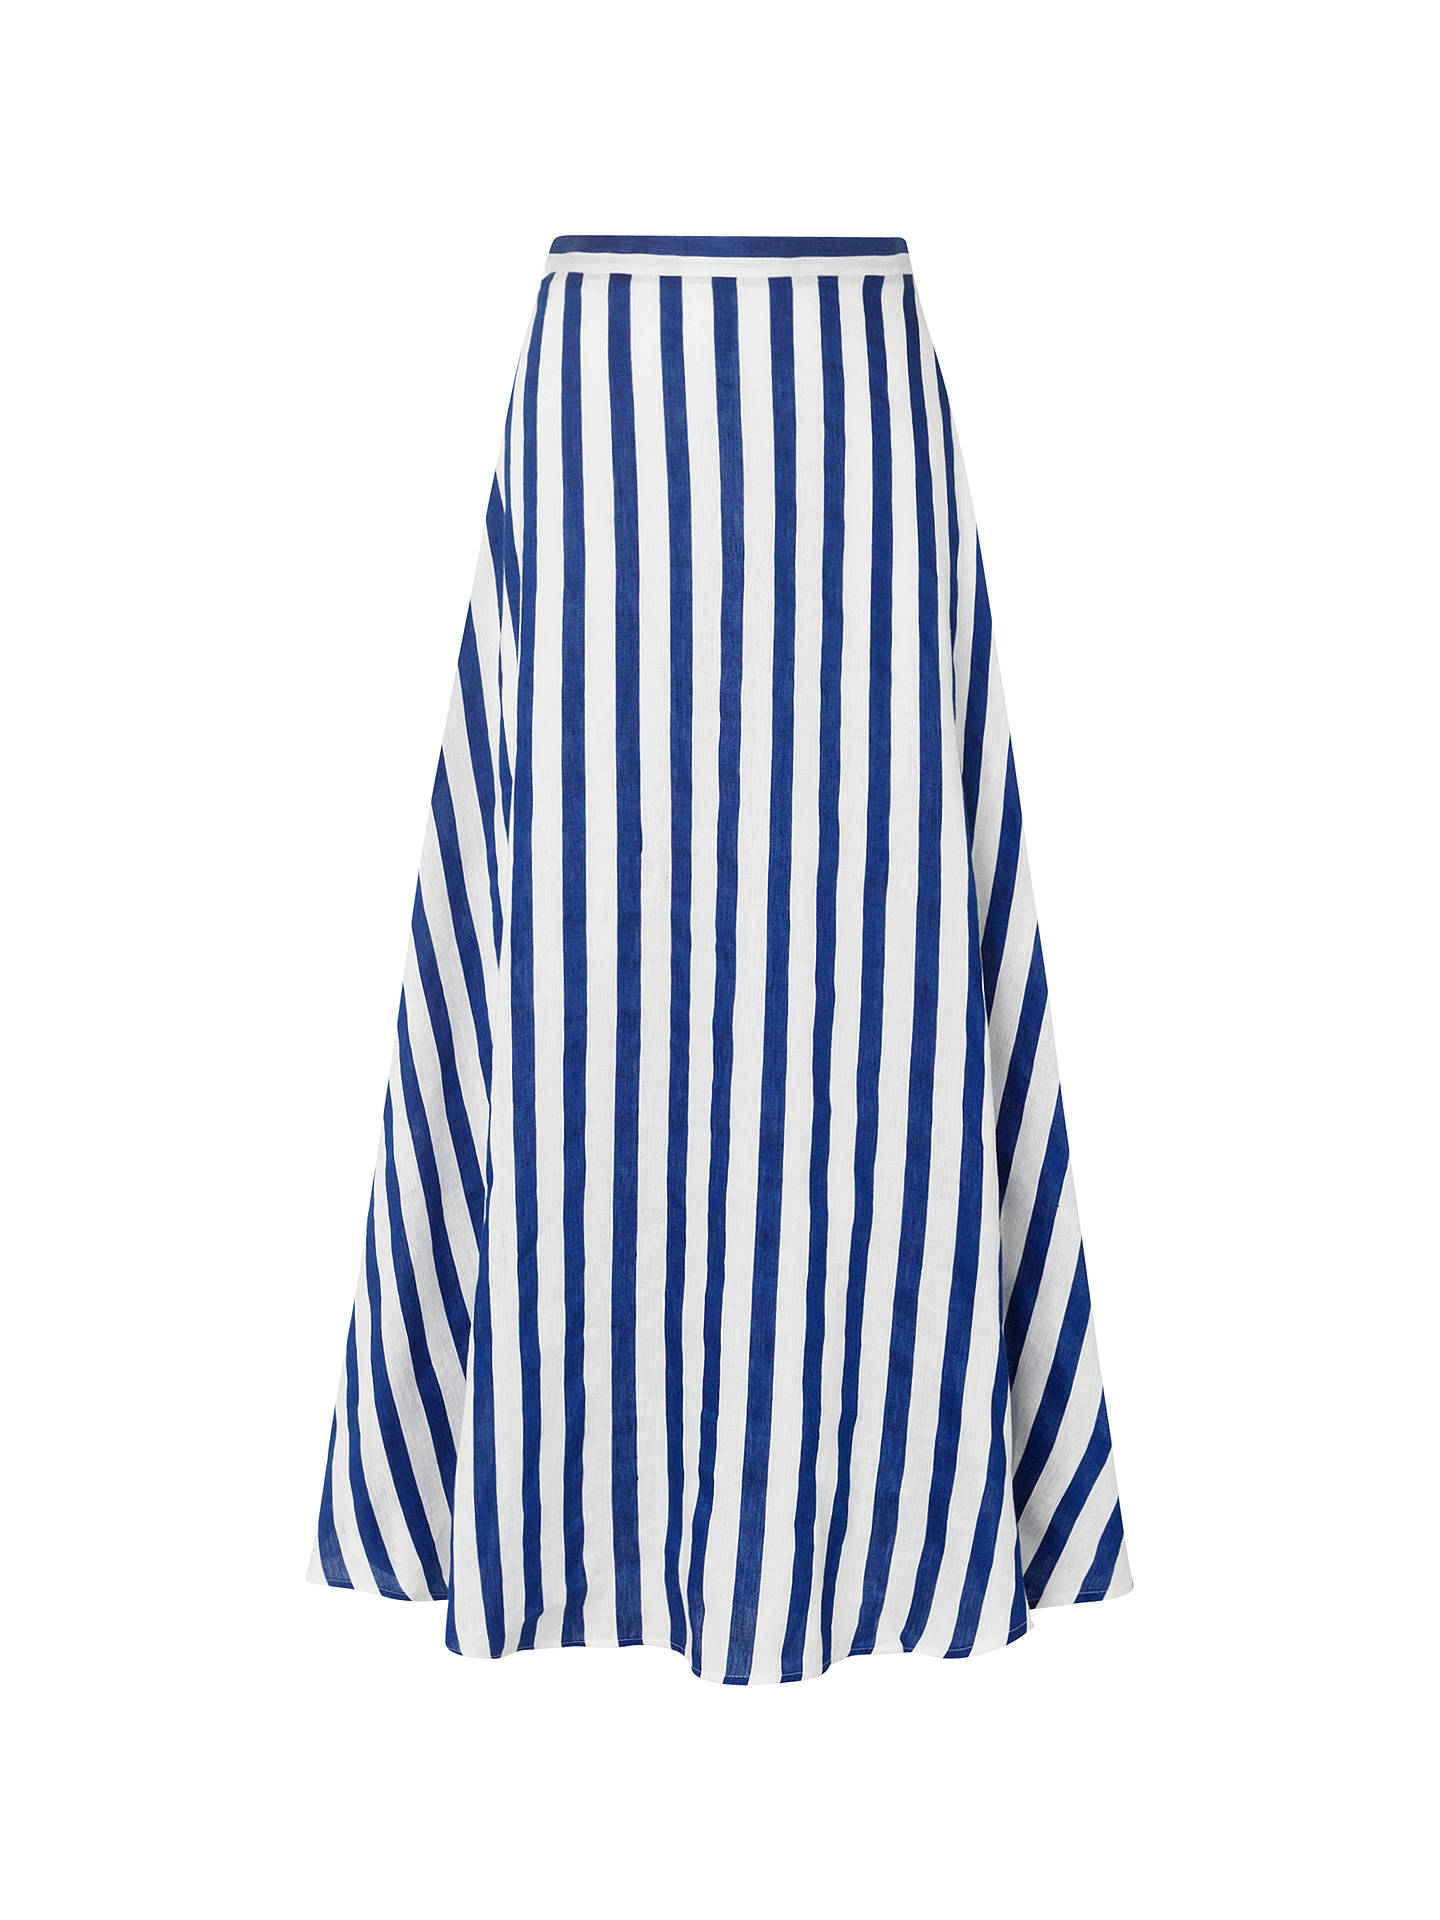 L.K. Bennett Harpa Stripe Skirt, Blue/White at John Lewis & Partners